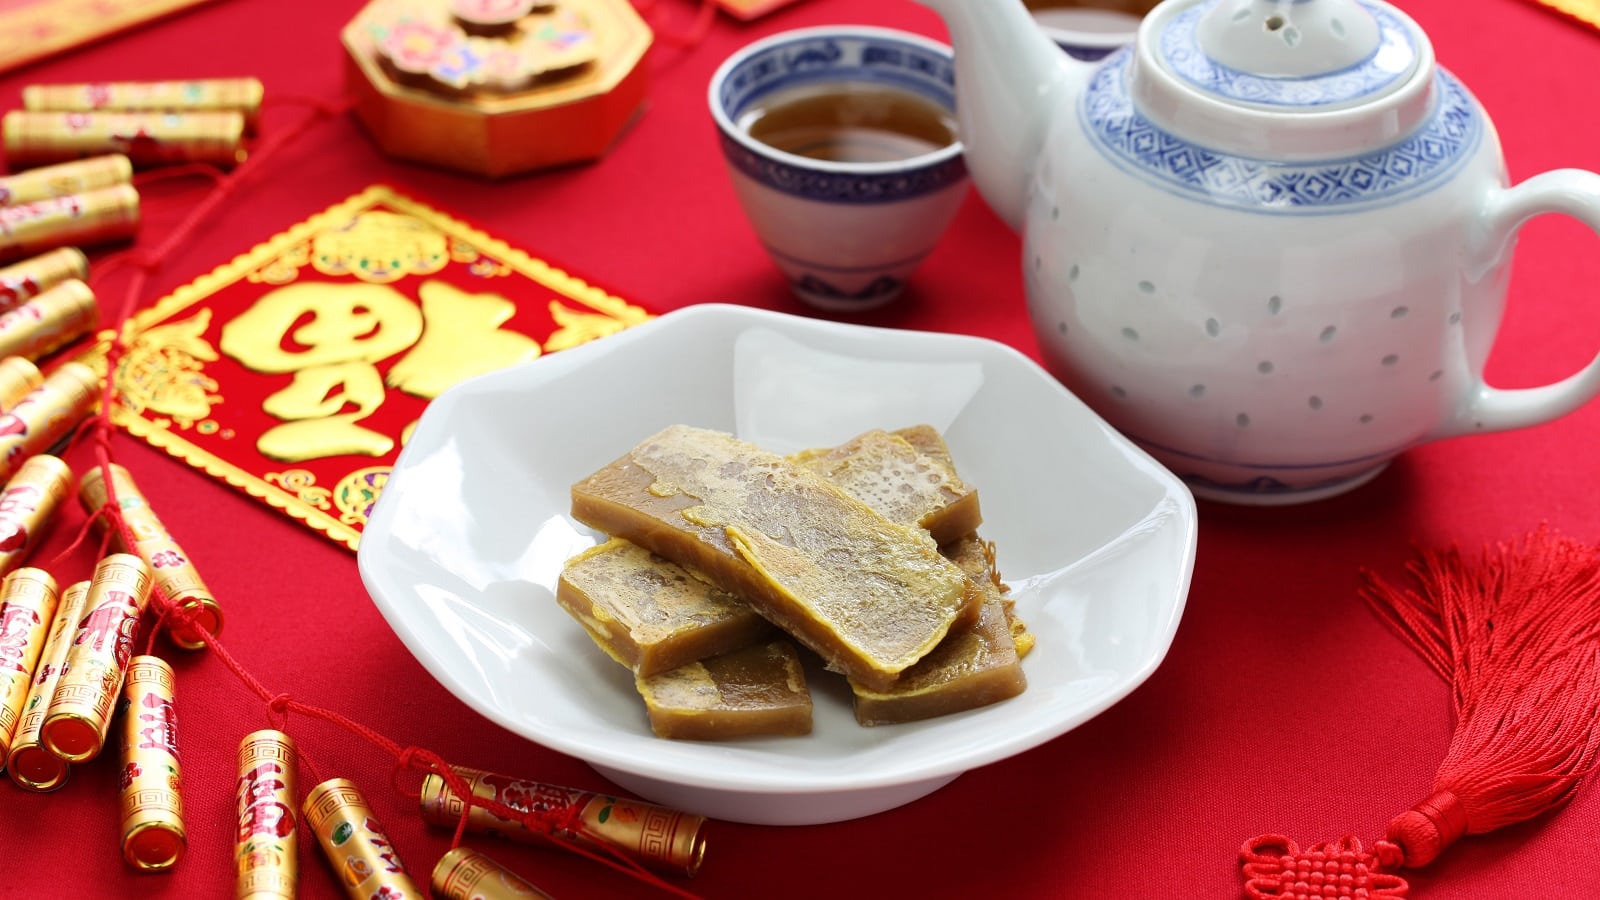 Eine weiße Porzellan-Schüssel mit mehreren Scheiben des chinesischen Reiskuchens Nian Gao neben einer Kanne und einer Tasse mit dunklem Tee, alles auf einem Tisch, der mit einem roten Tuch ausgelegt ist und mit festlichen Dekorationen verziert ist.